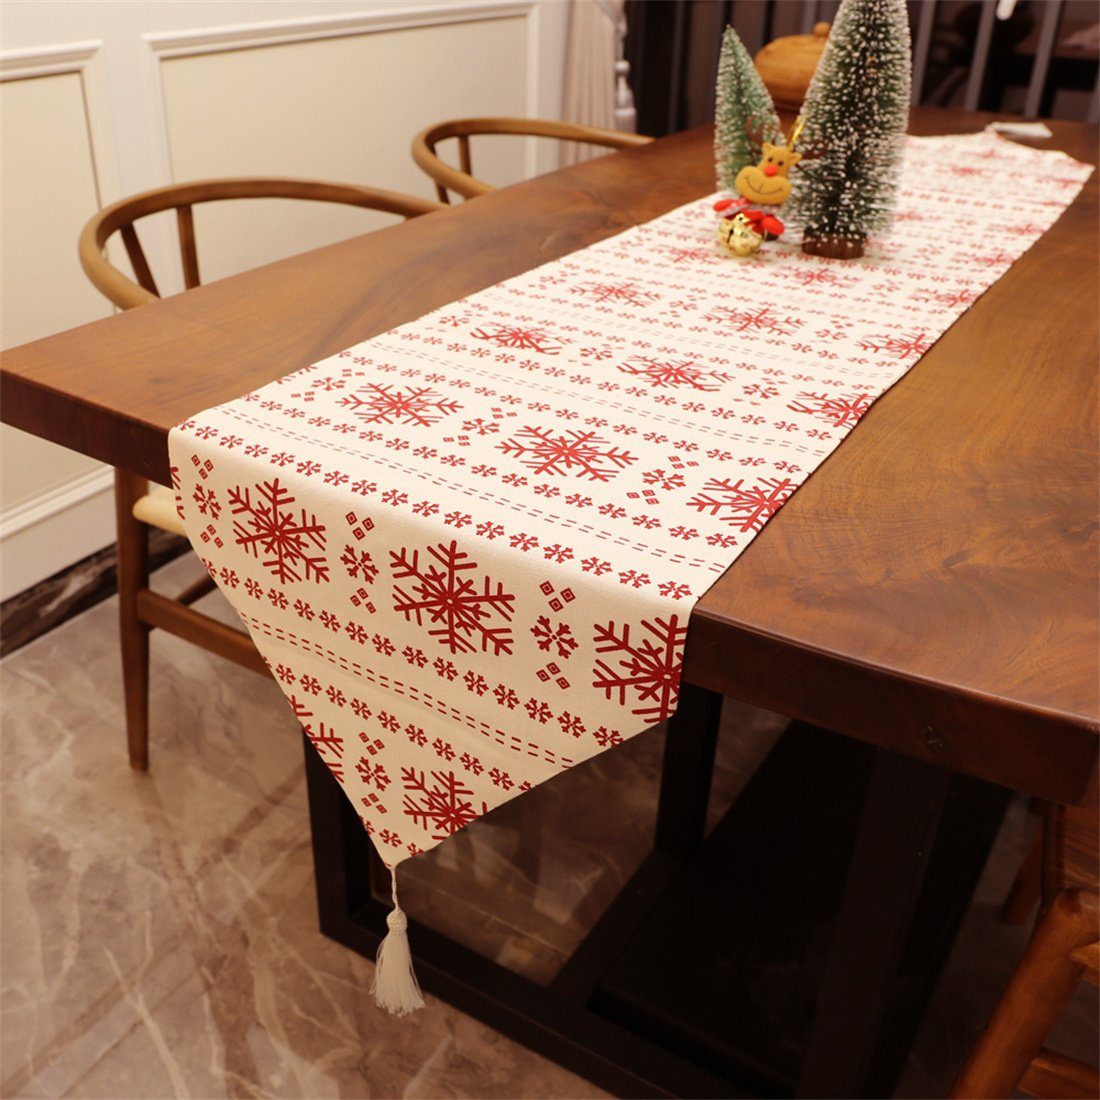 Schneeflocke Tischläufer Tischläufer druckenTabelle,festliche Leinwand Weihnachten DÖRÖY